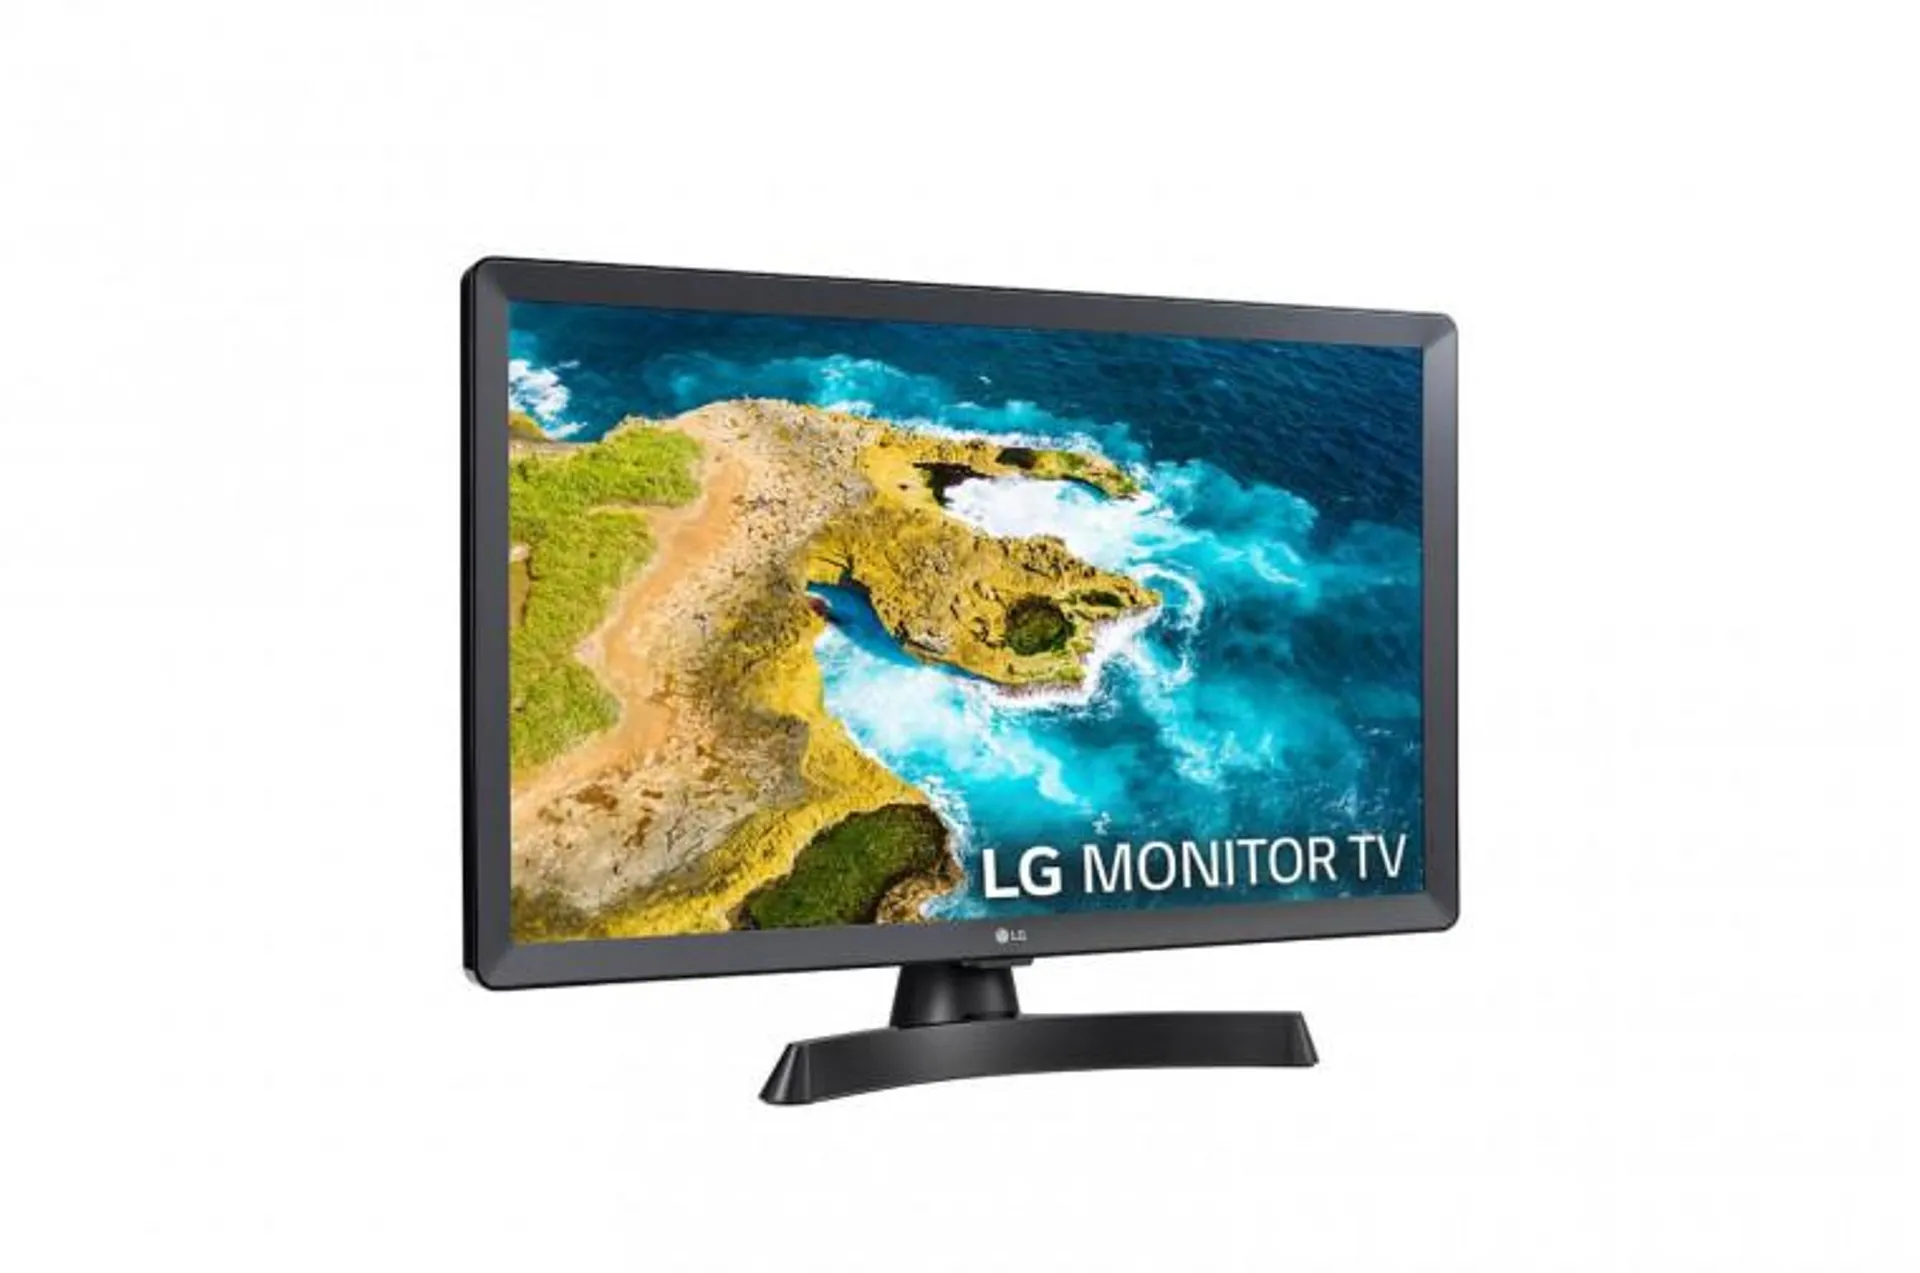 Outlet TV/Monitor LG 61cm/24" Smart TV